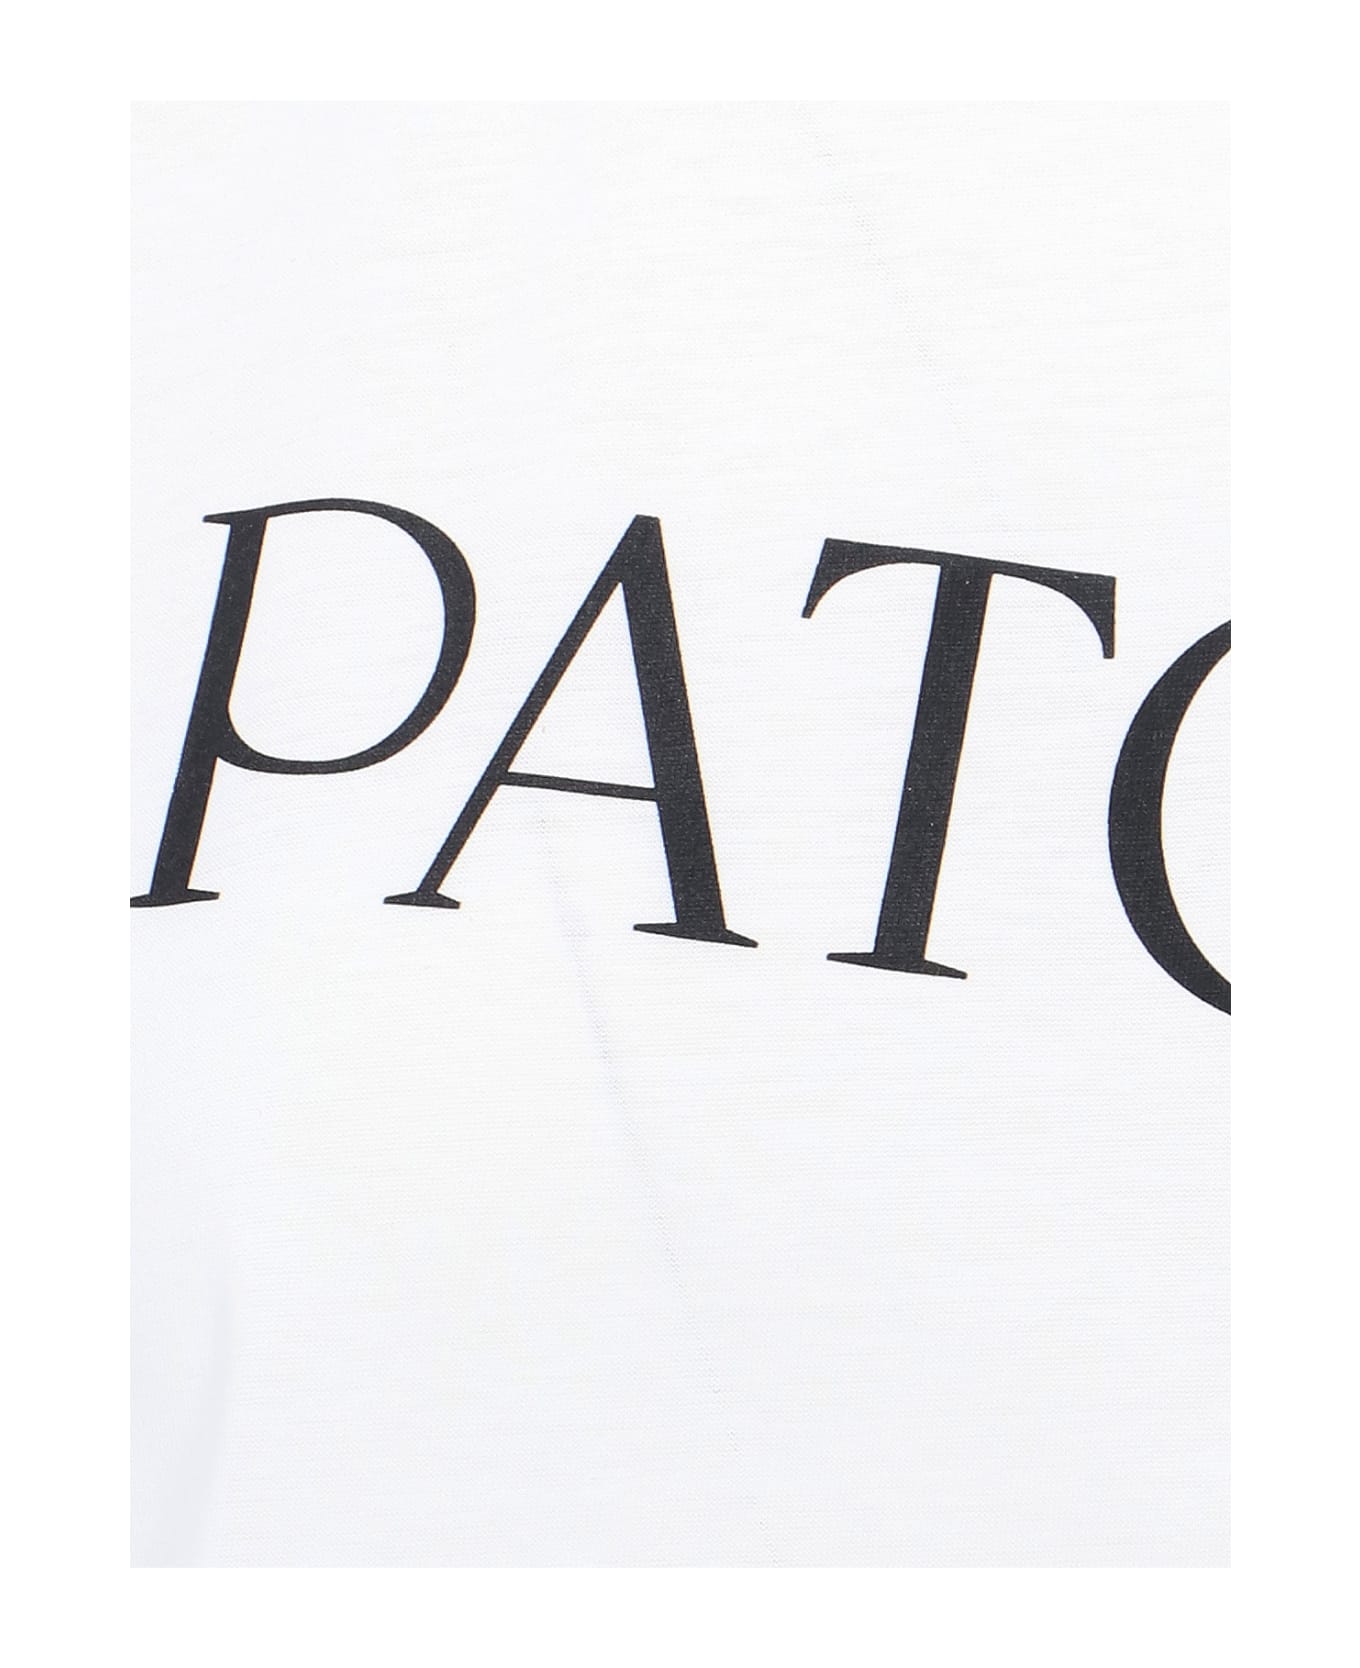 Patou Logo T-shirt Tシャツ